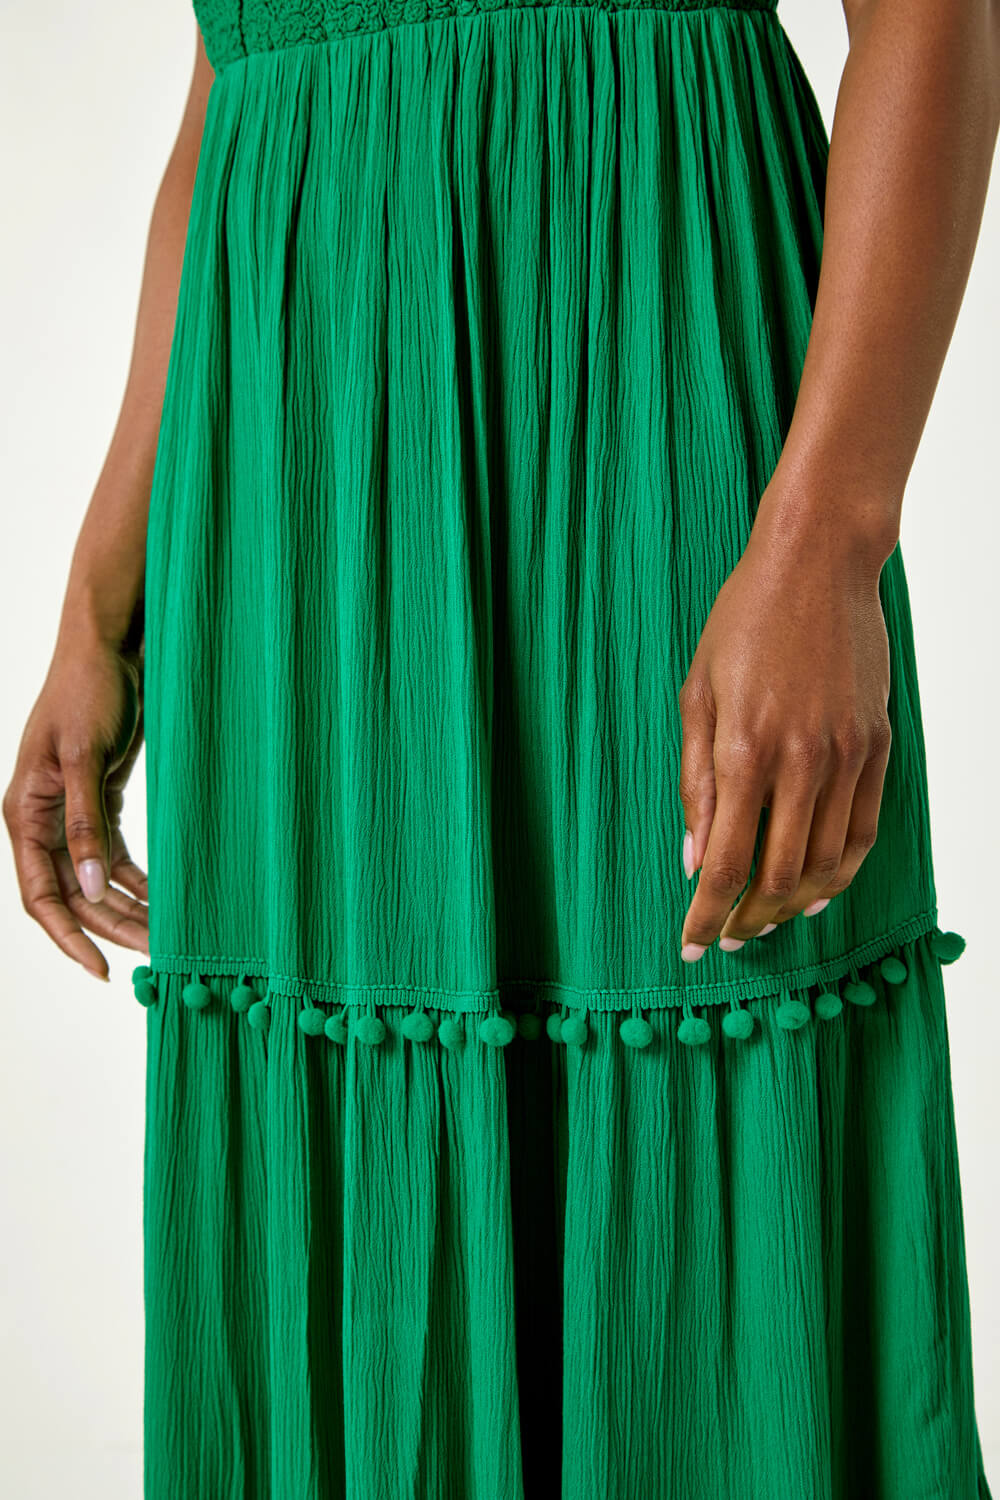 Green Crochet Detail Cotton Blend Maxi Dress, Image 5 of 5